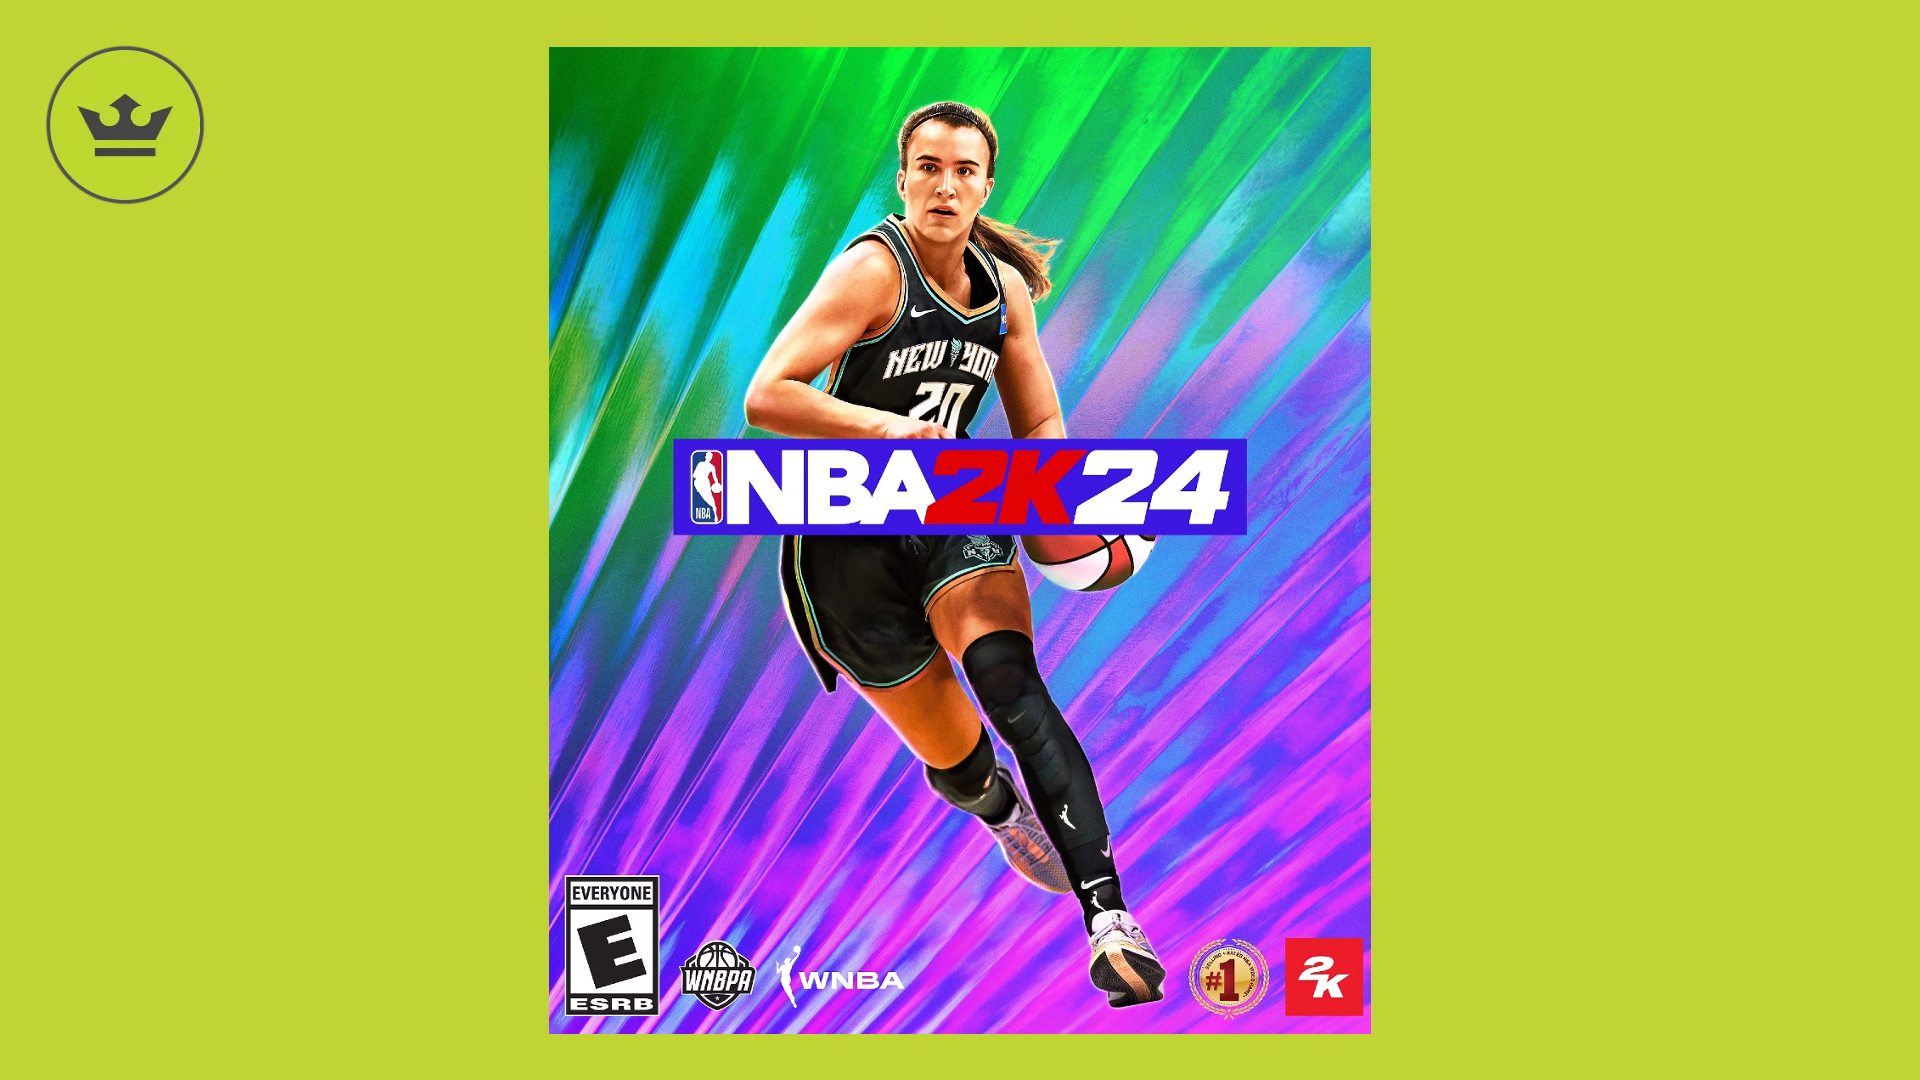 NBA 2K24 Release Date: Sabrina Ionescu can be seen